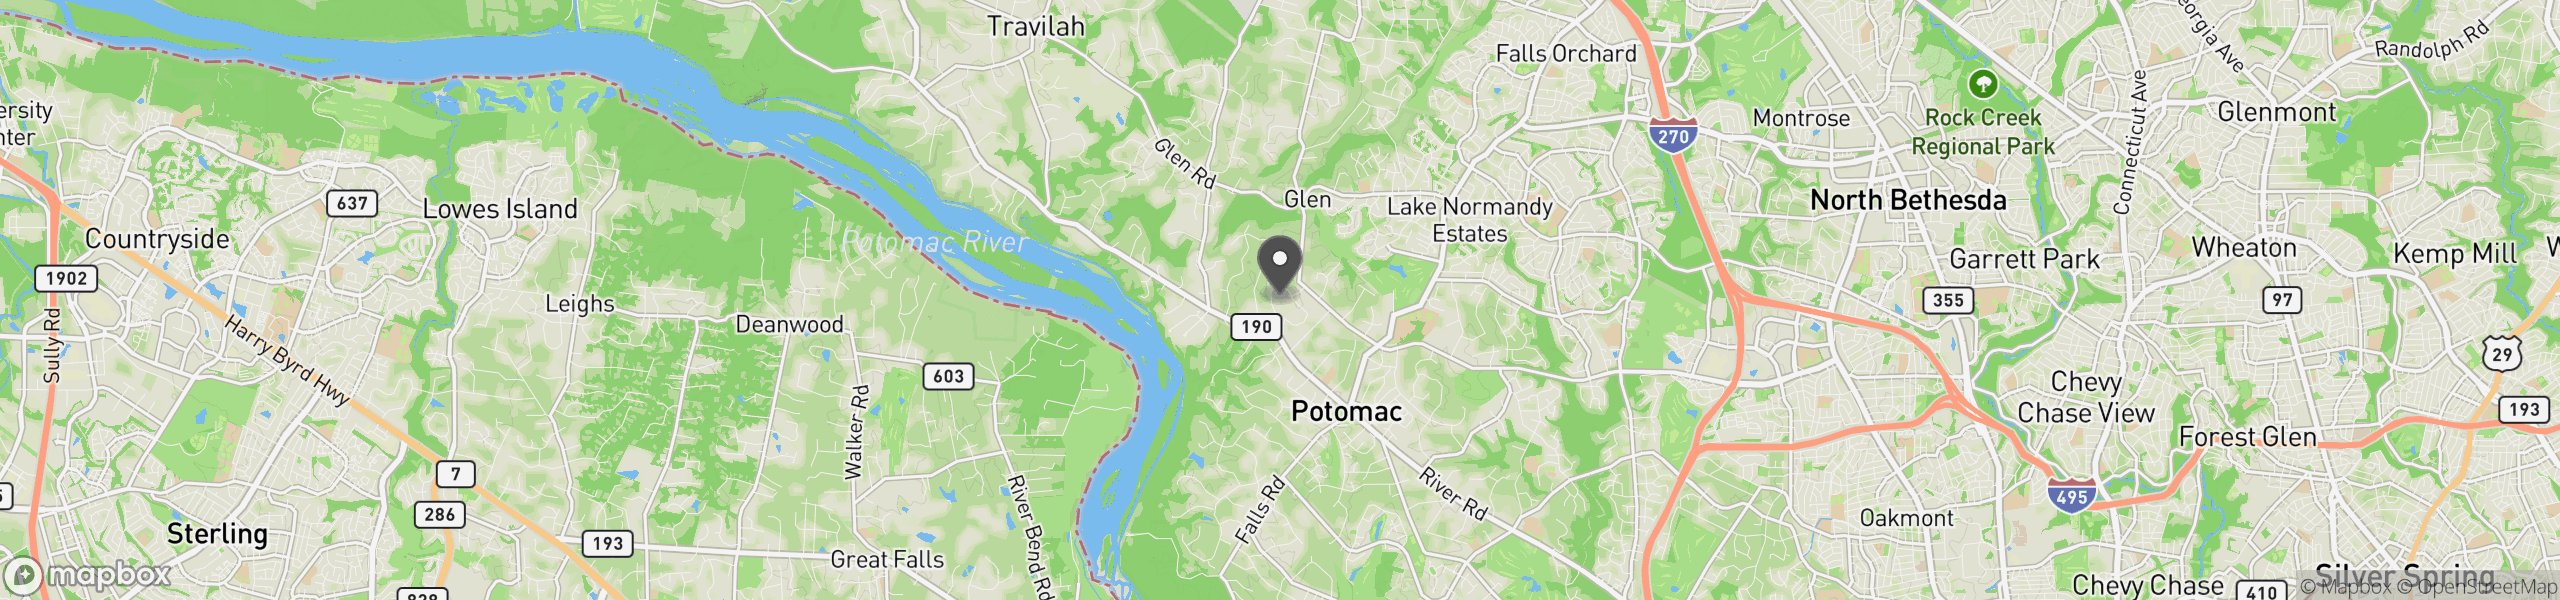 Potomac, MD 20854